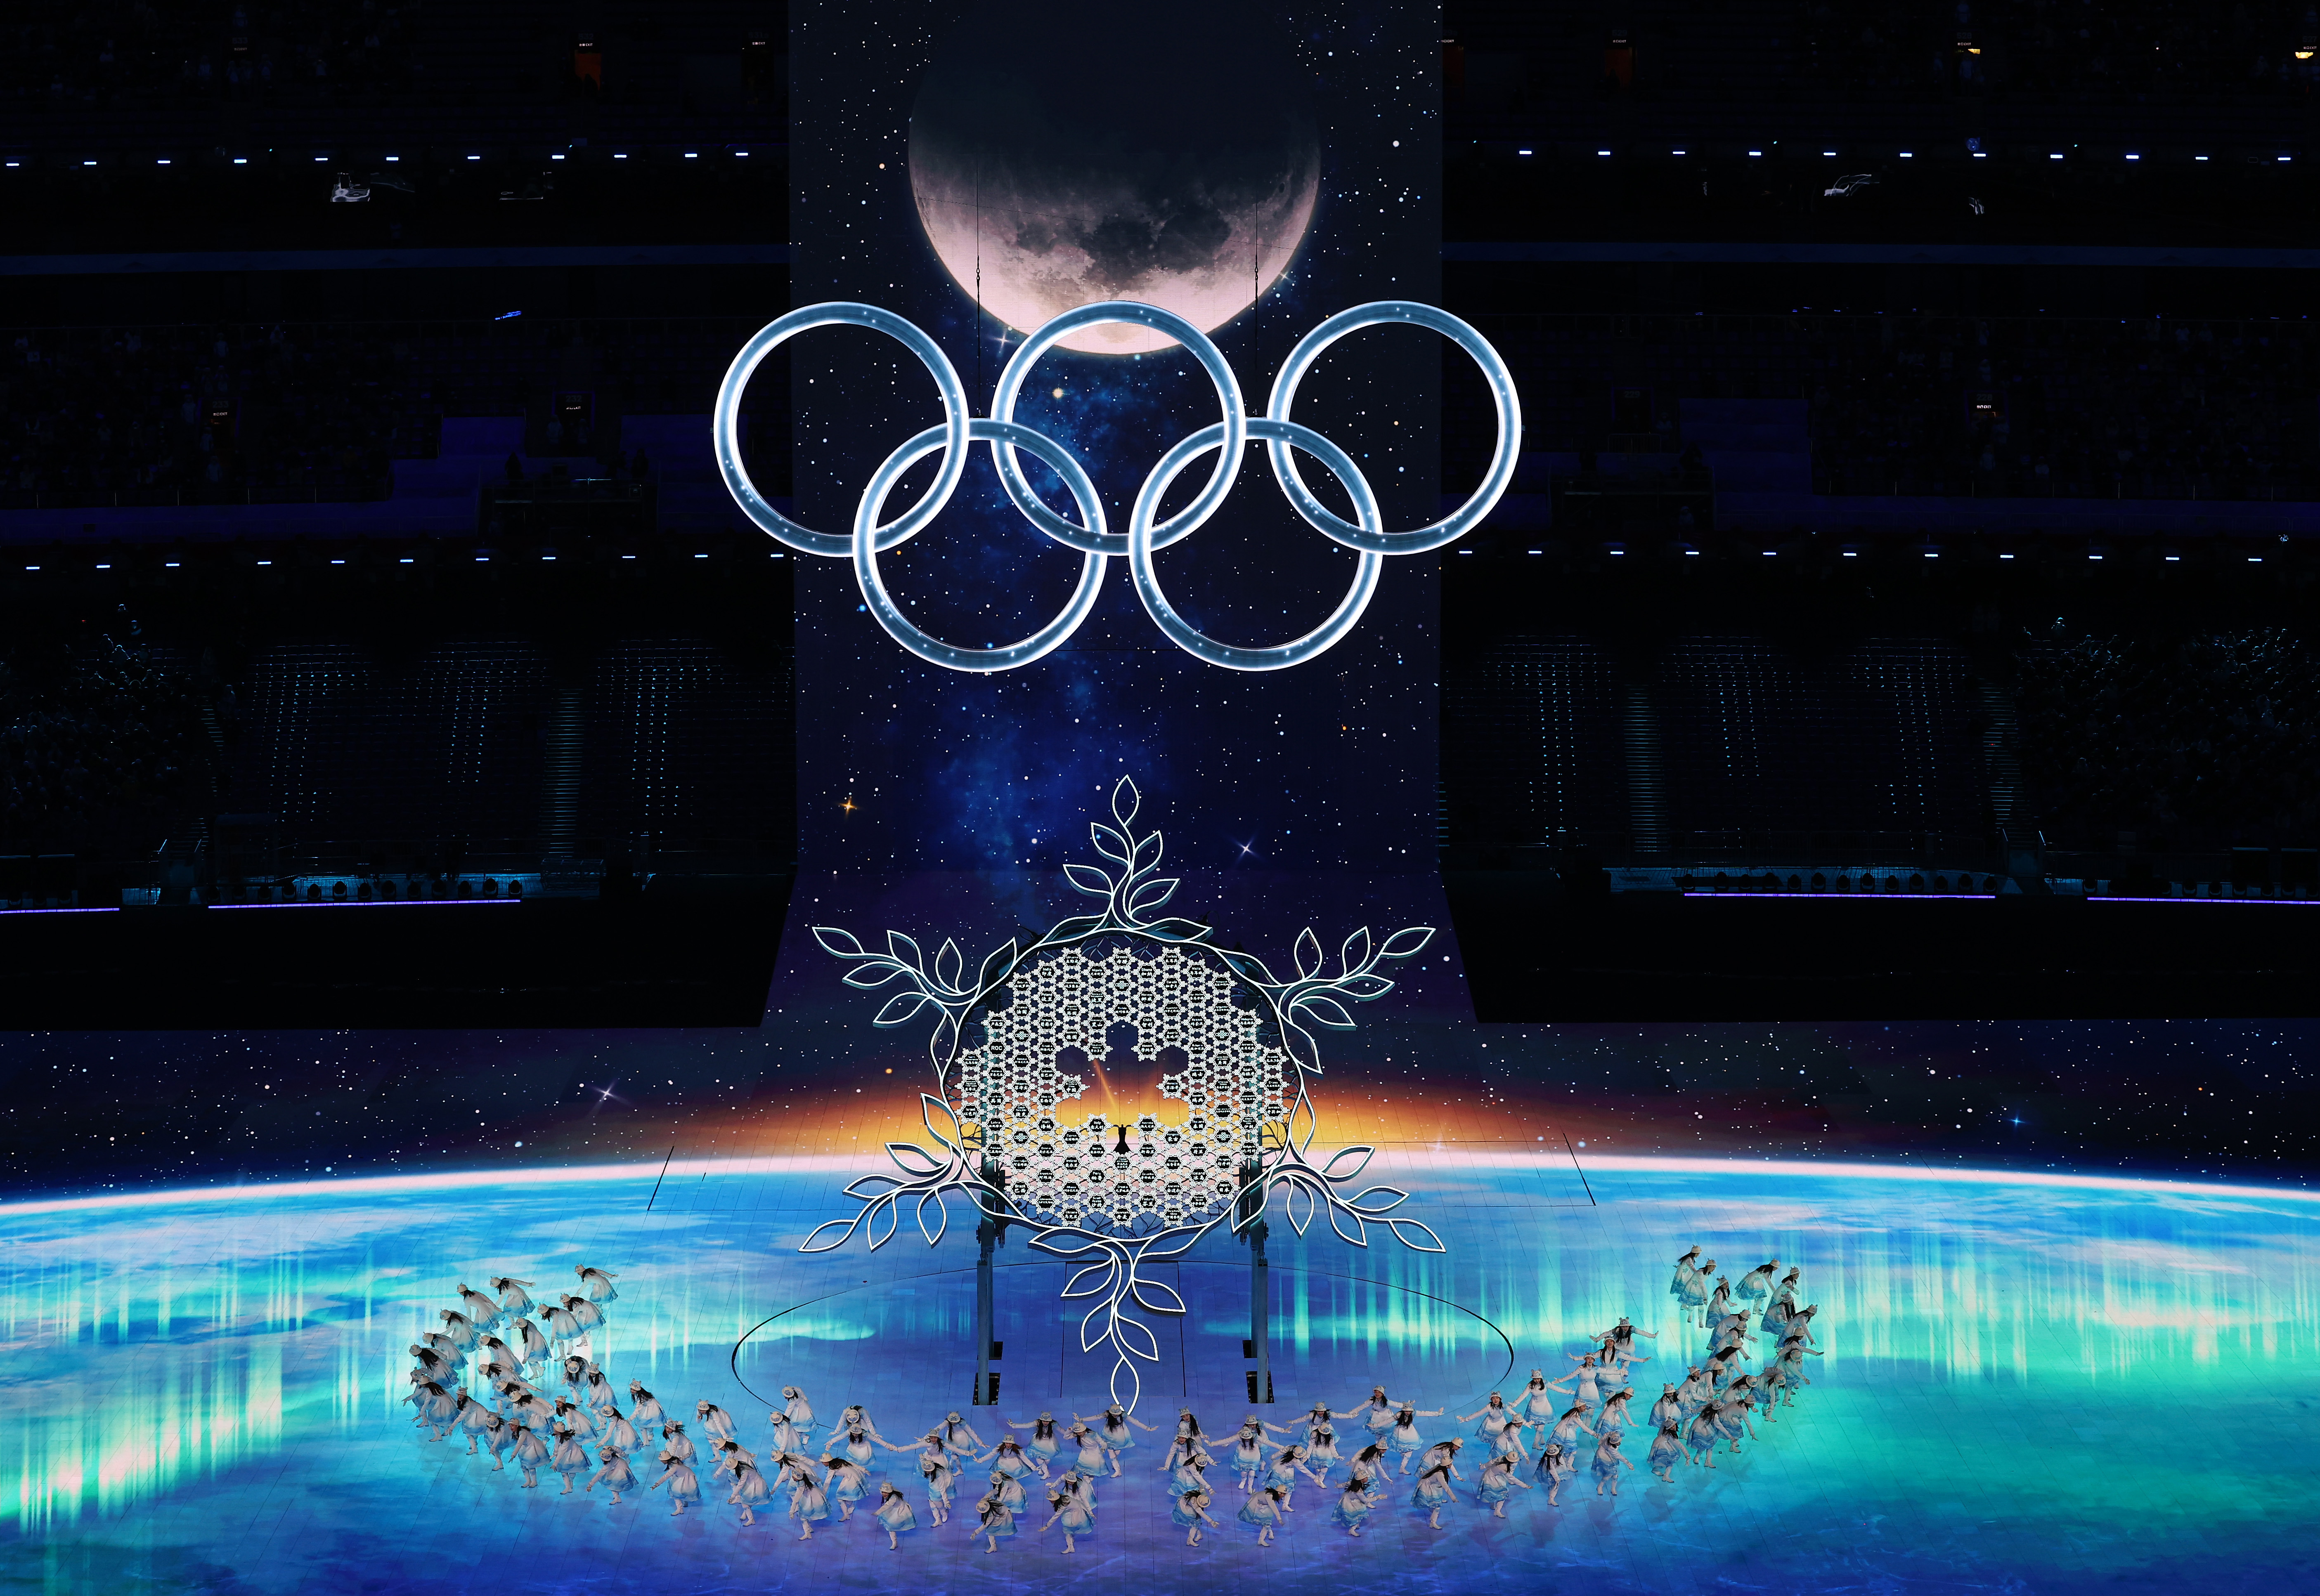 印度尼西亚《印尼新报》刊文说,北京冬奥会口号"一起向未来"